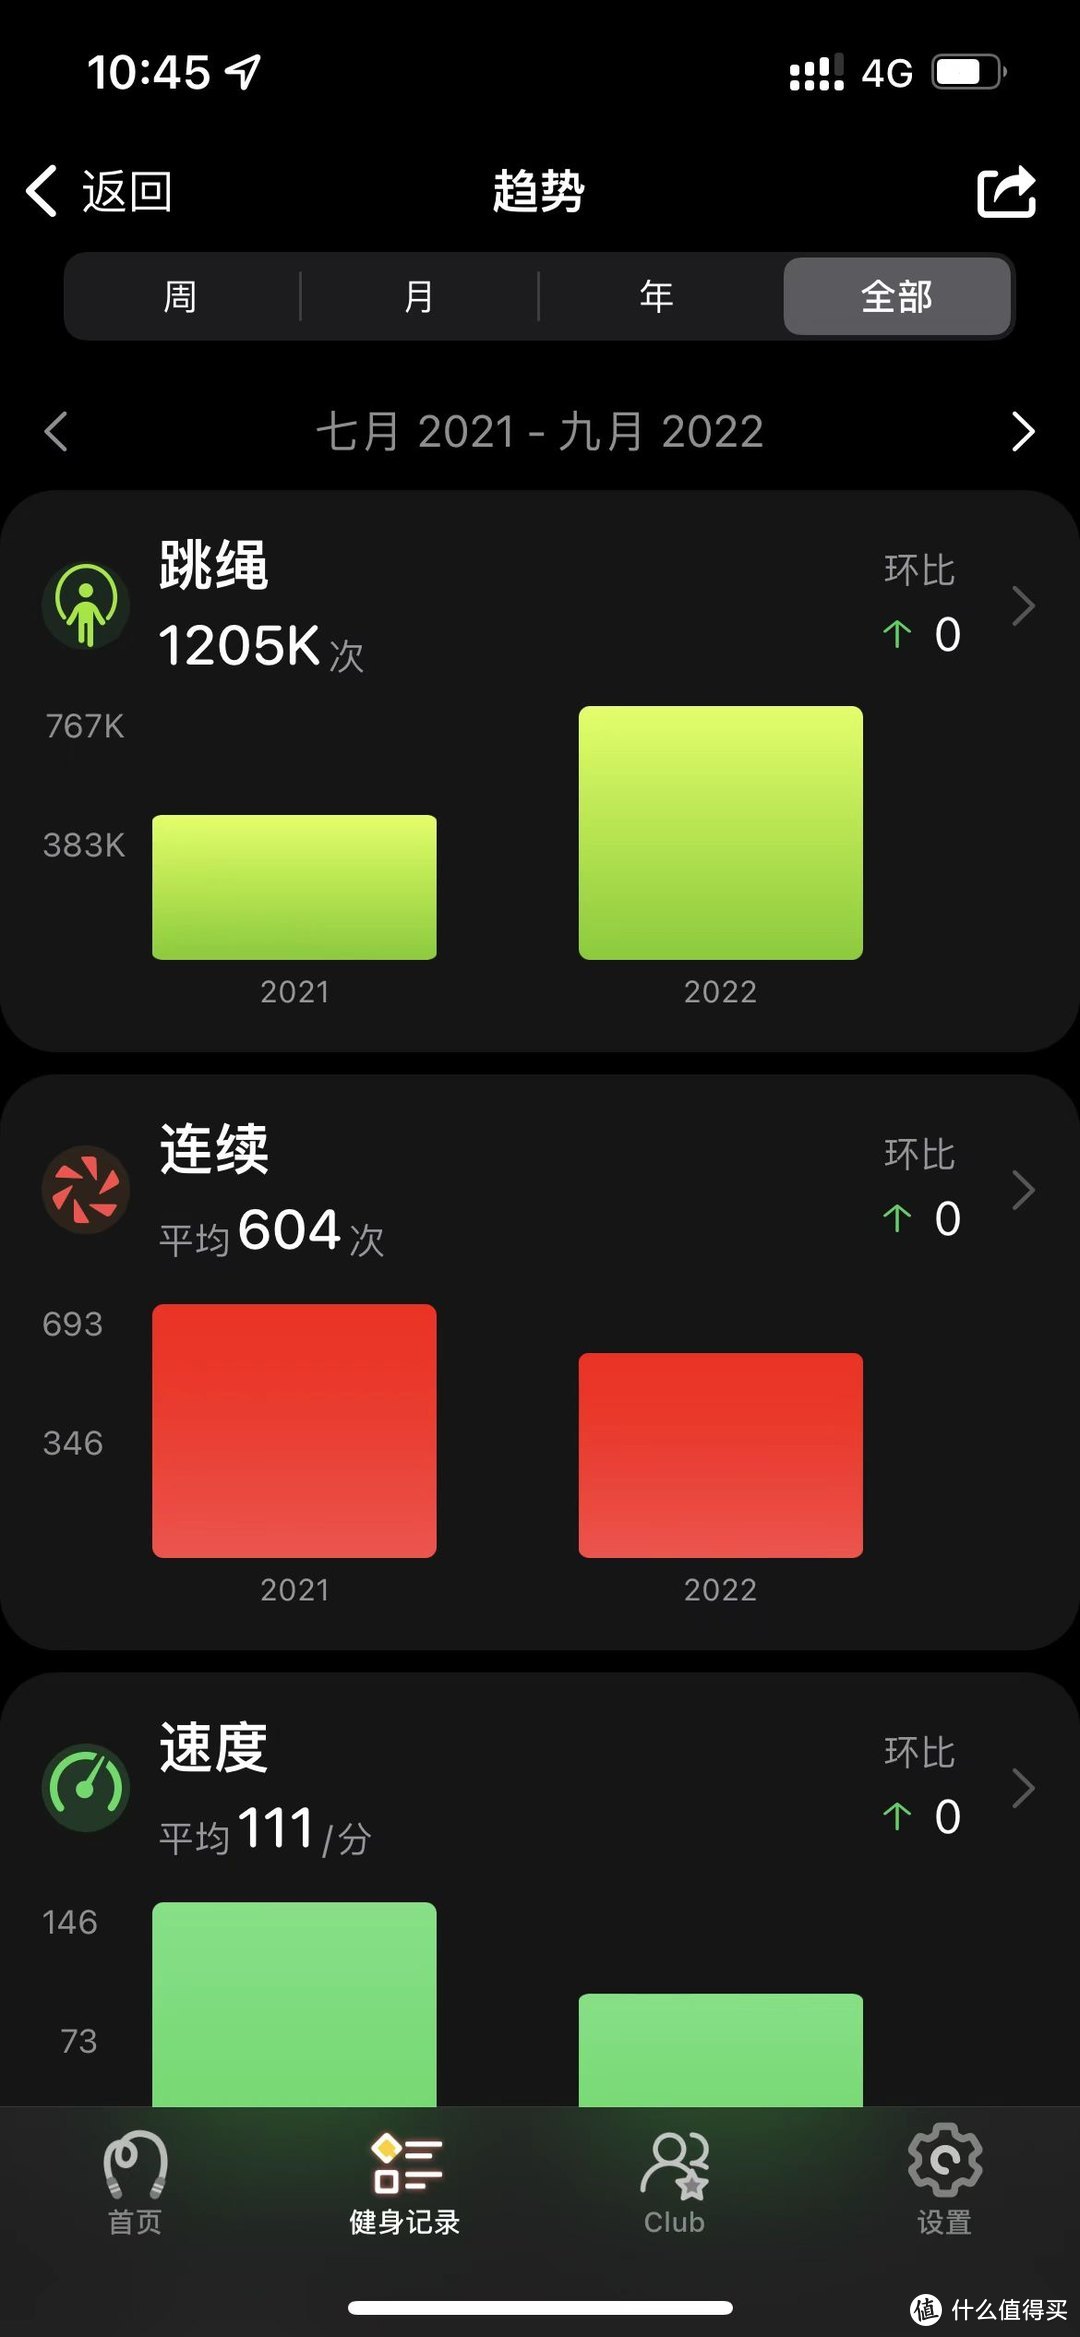 2021年开始用yaoyao软件记录跳绳次数是120万次